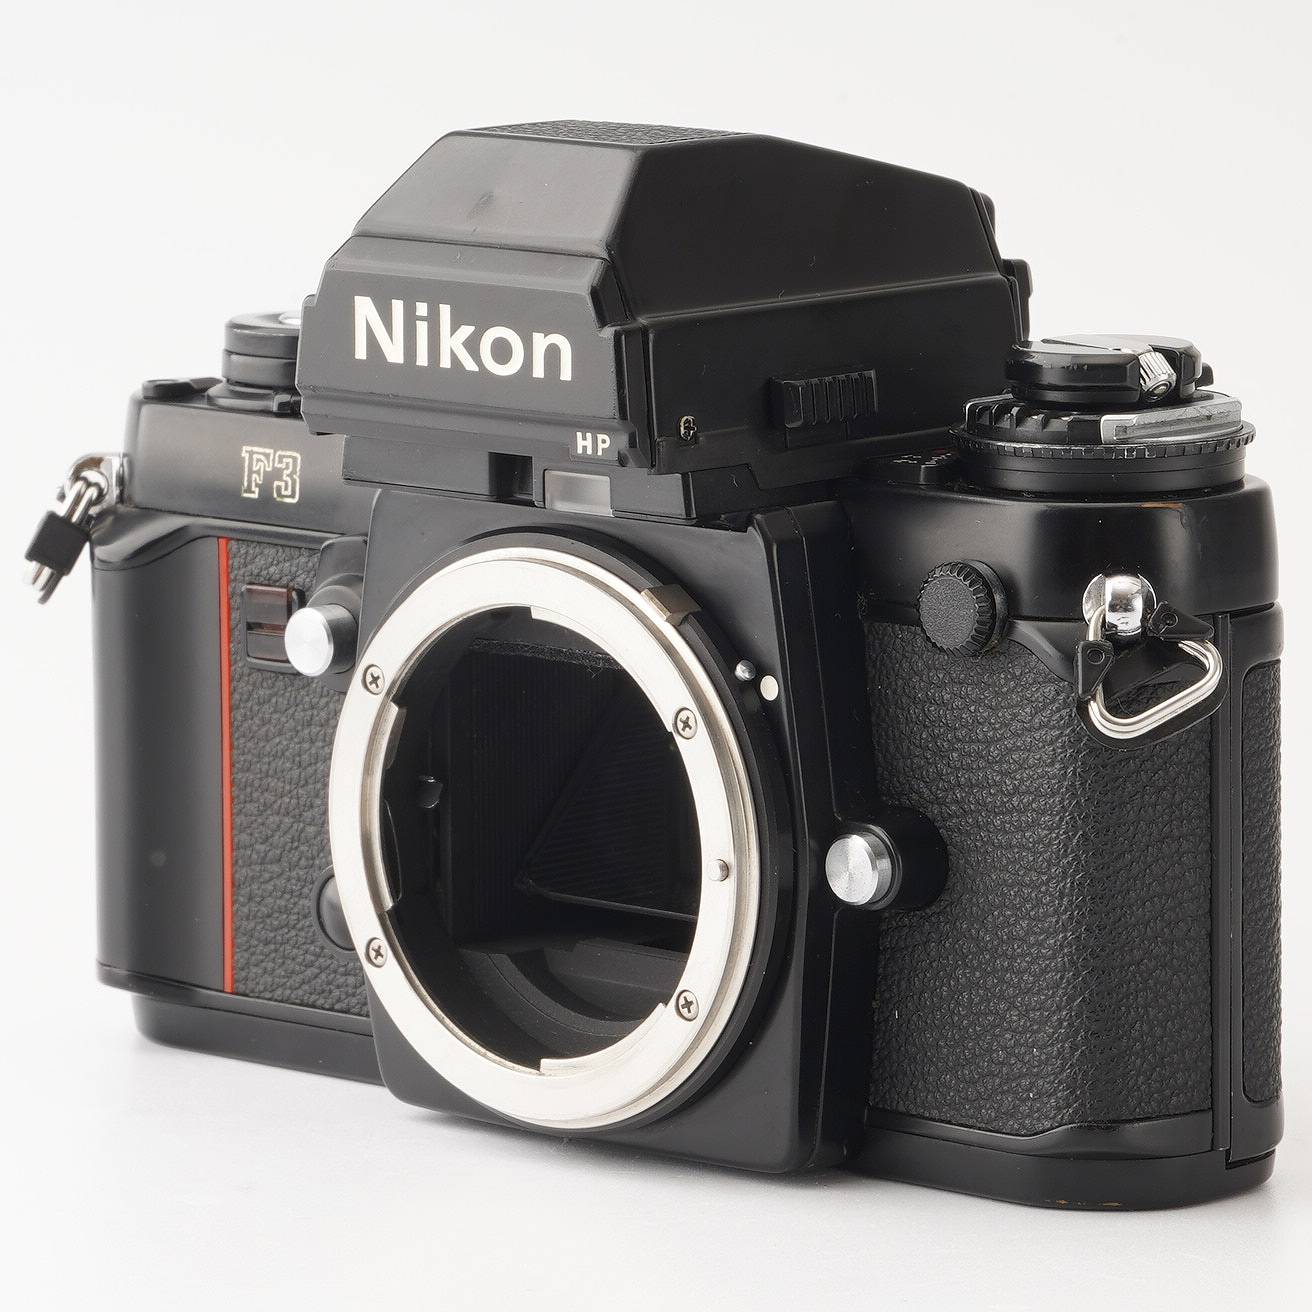 ニコン Nikon F3 HP 35mm 一眼レフフィルムカメラ